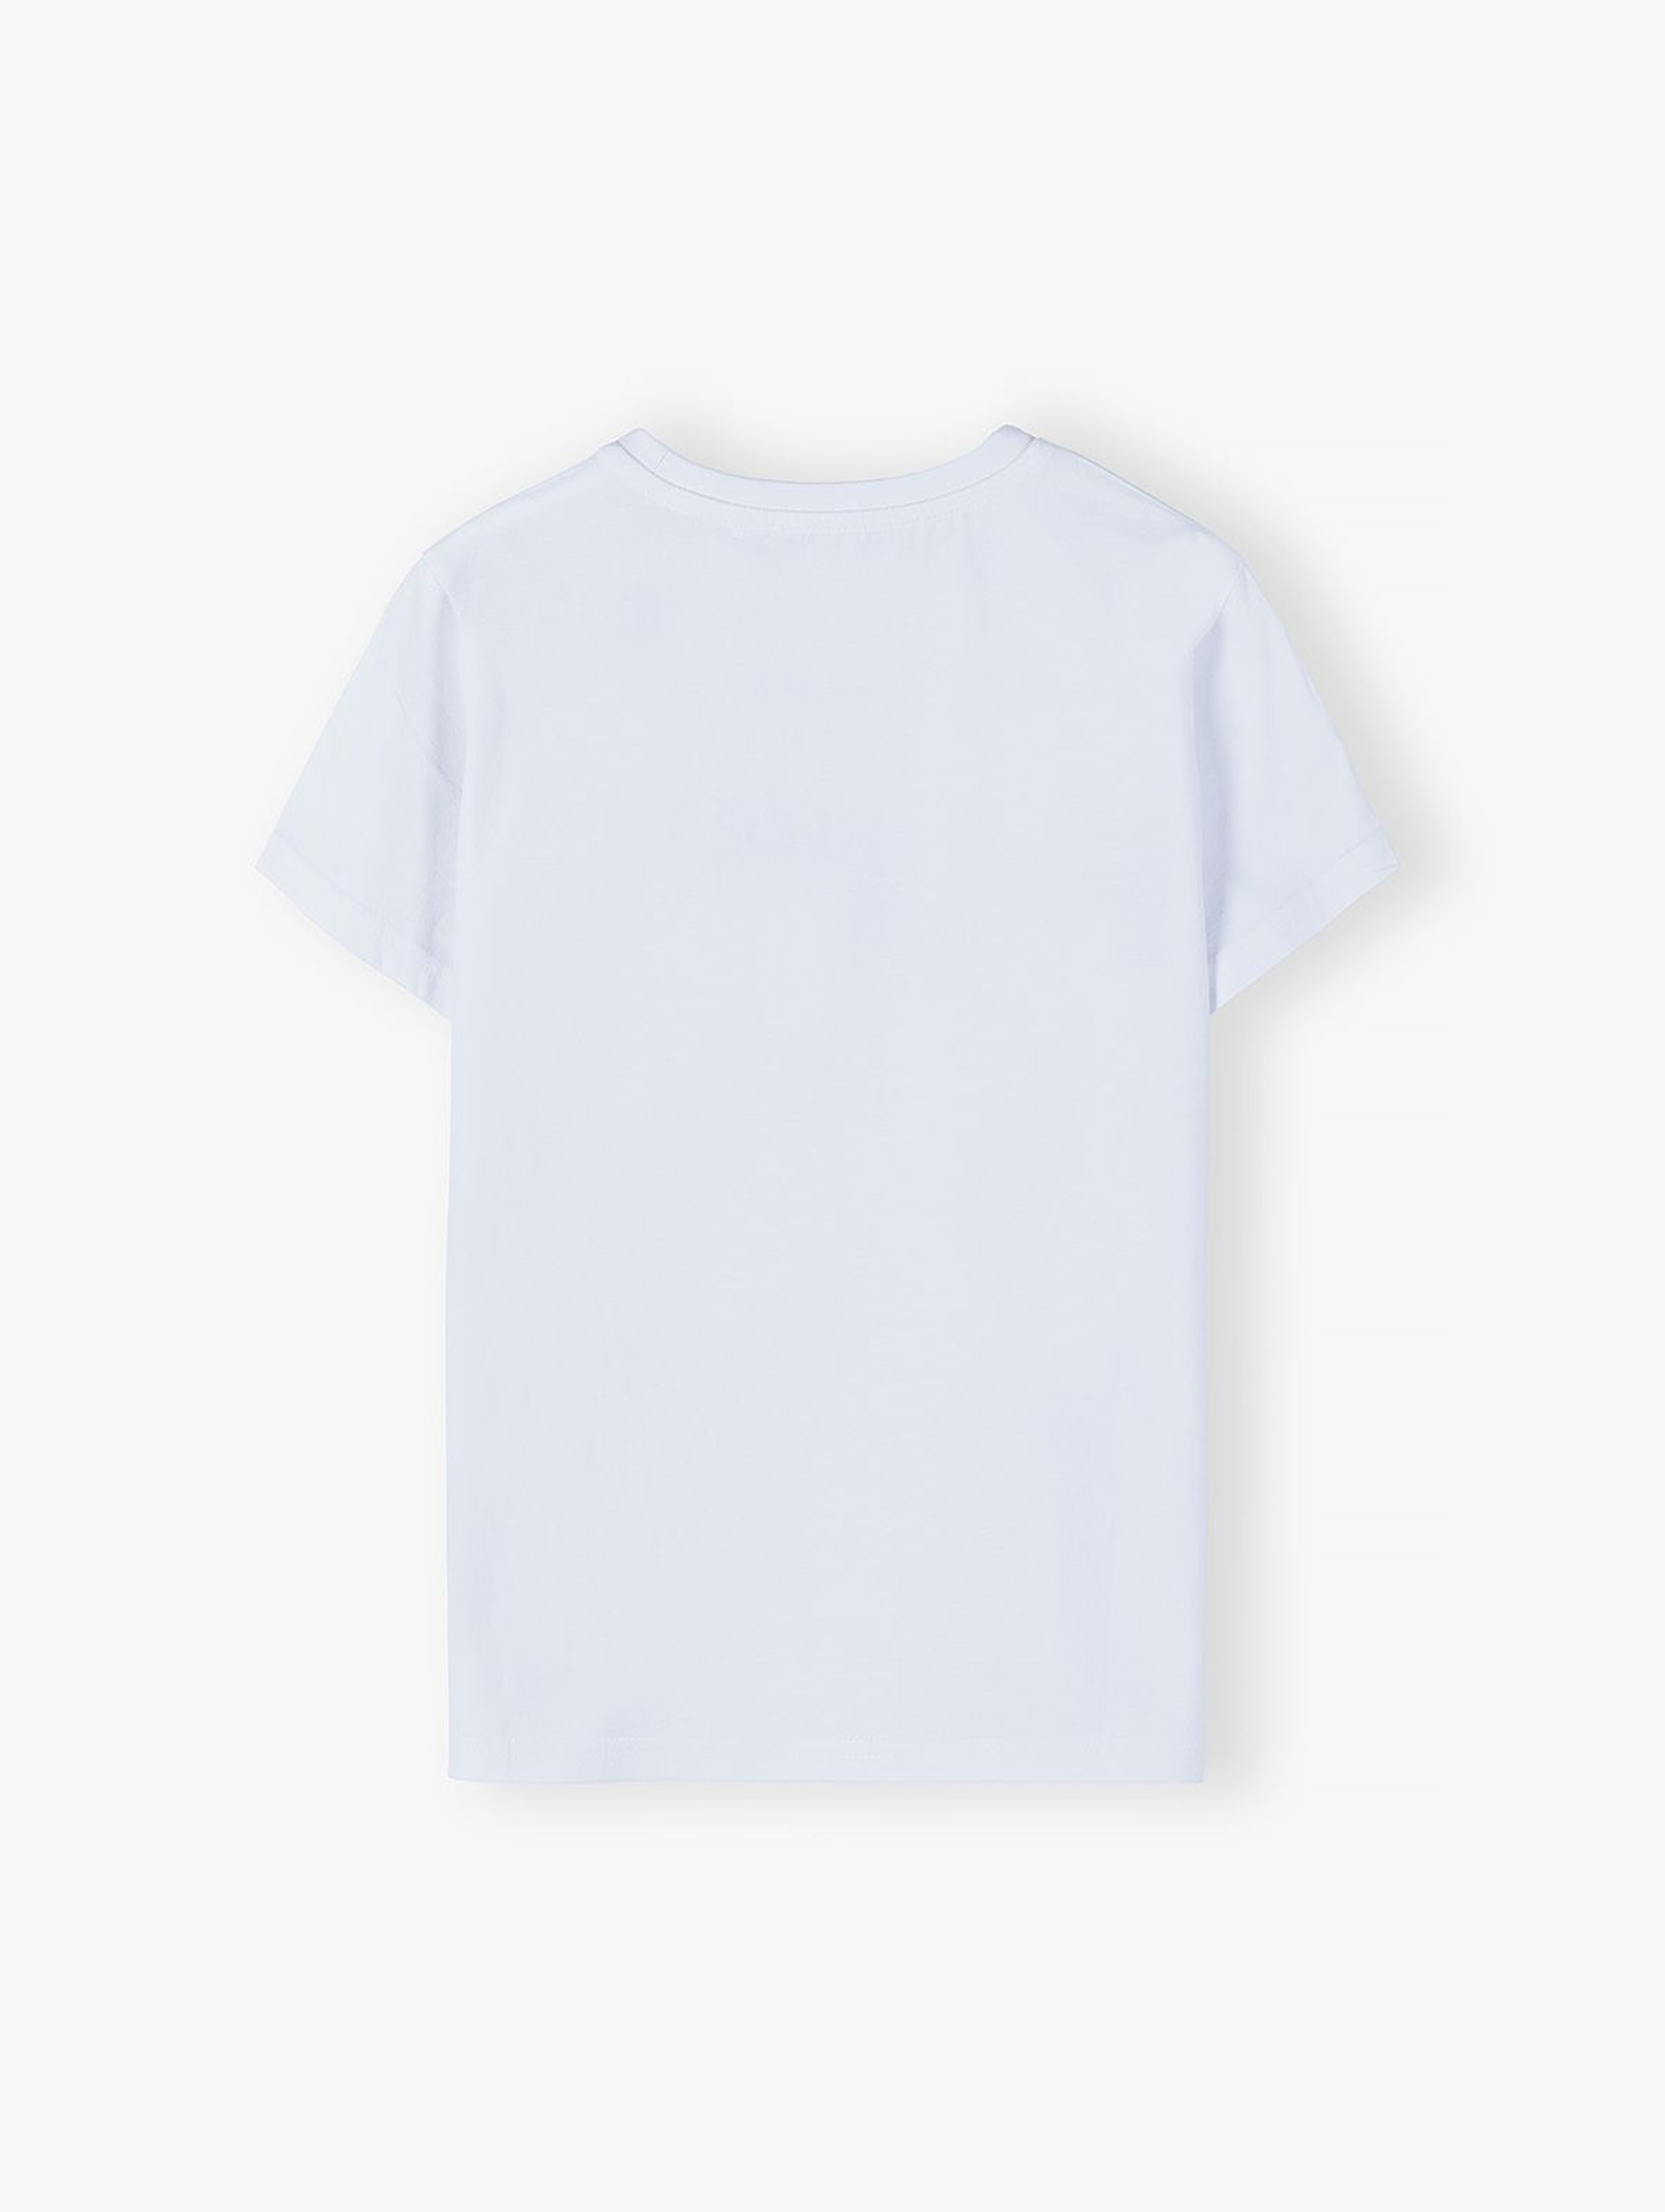 Bawełniany T-shirt dla chłopca - biały z napisem